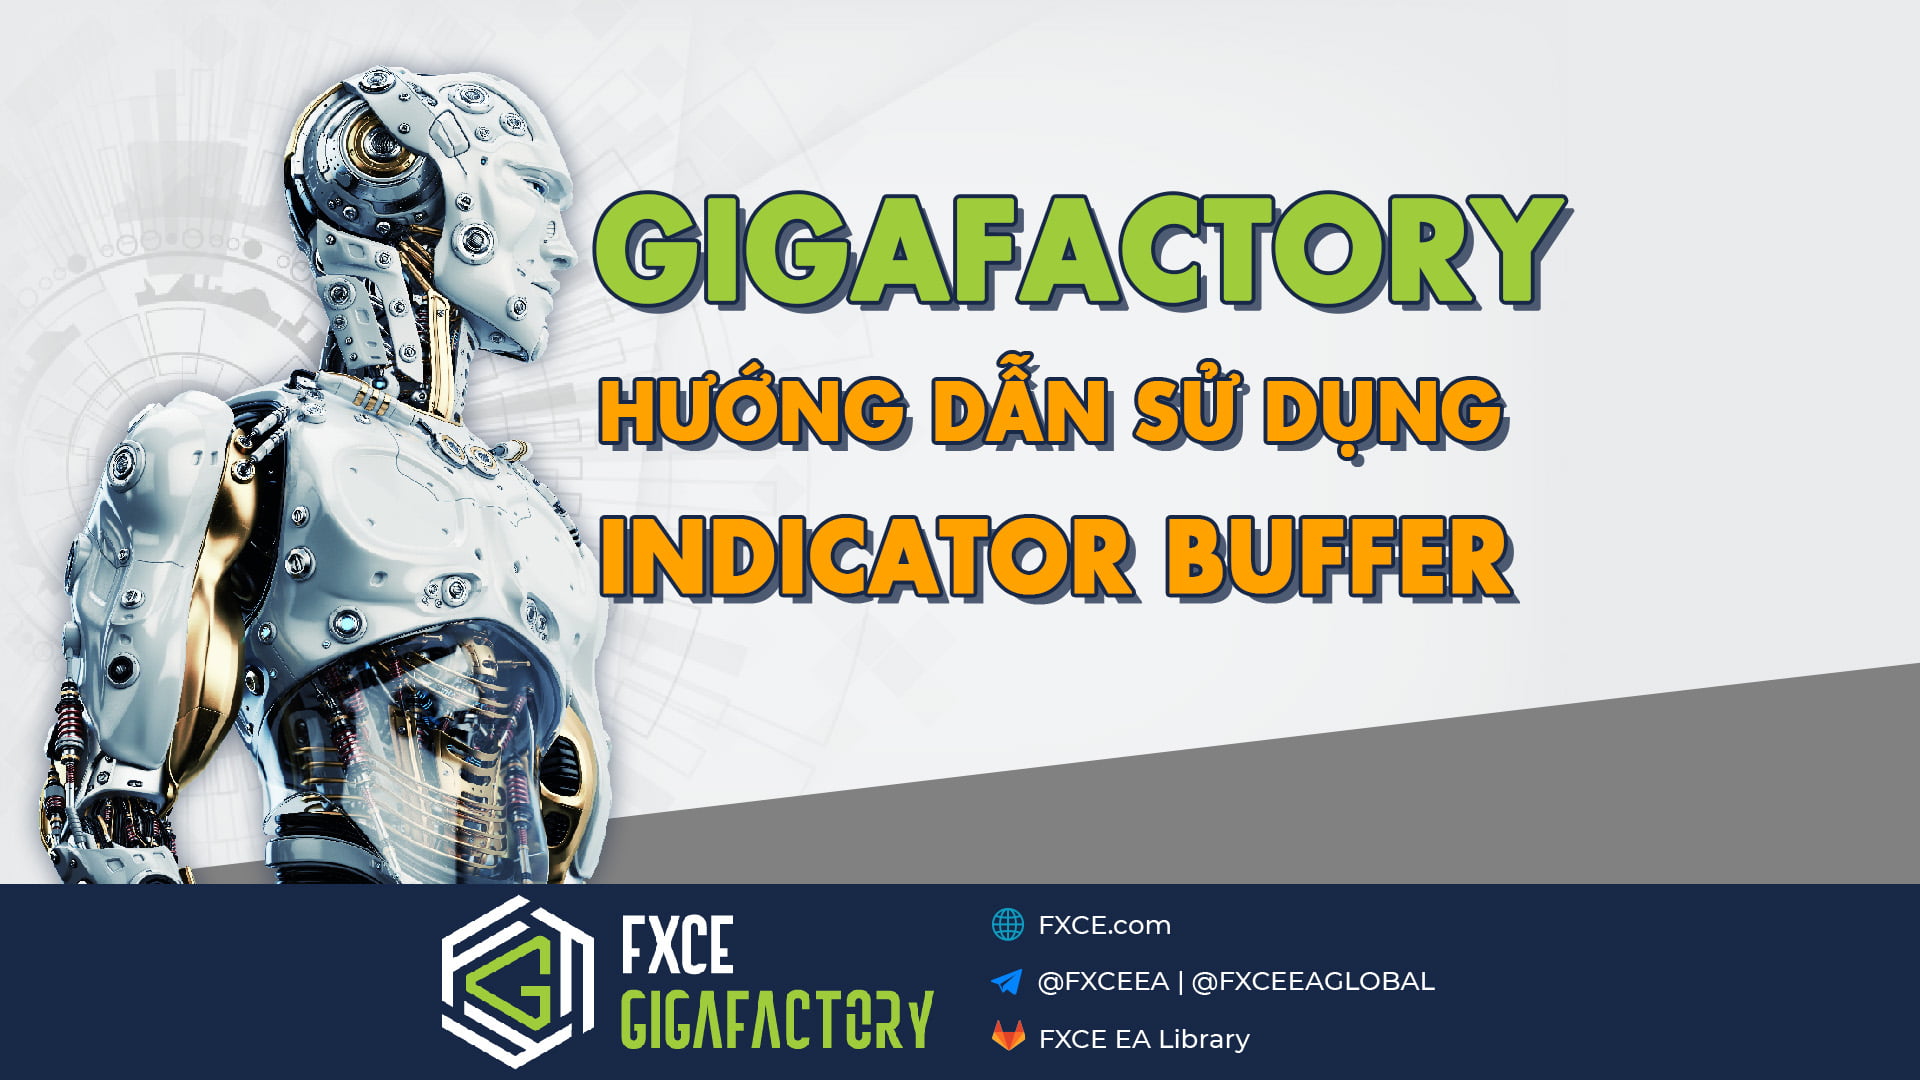 Indicator Buffer là gì? Cách sử dụng Indicator Buffer trong GigaFactory để tạo EA